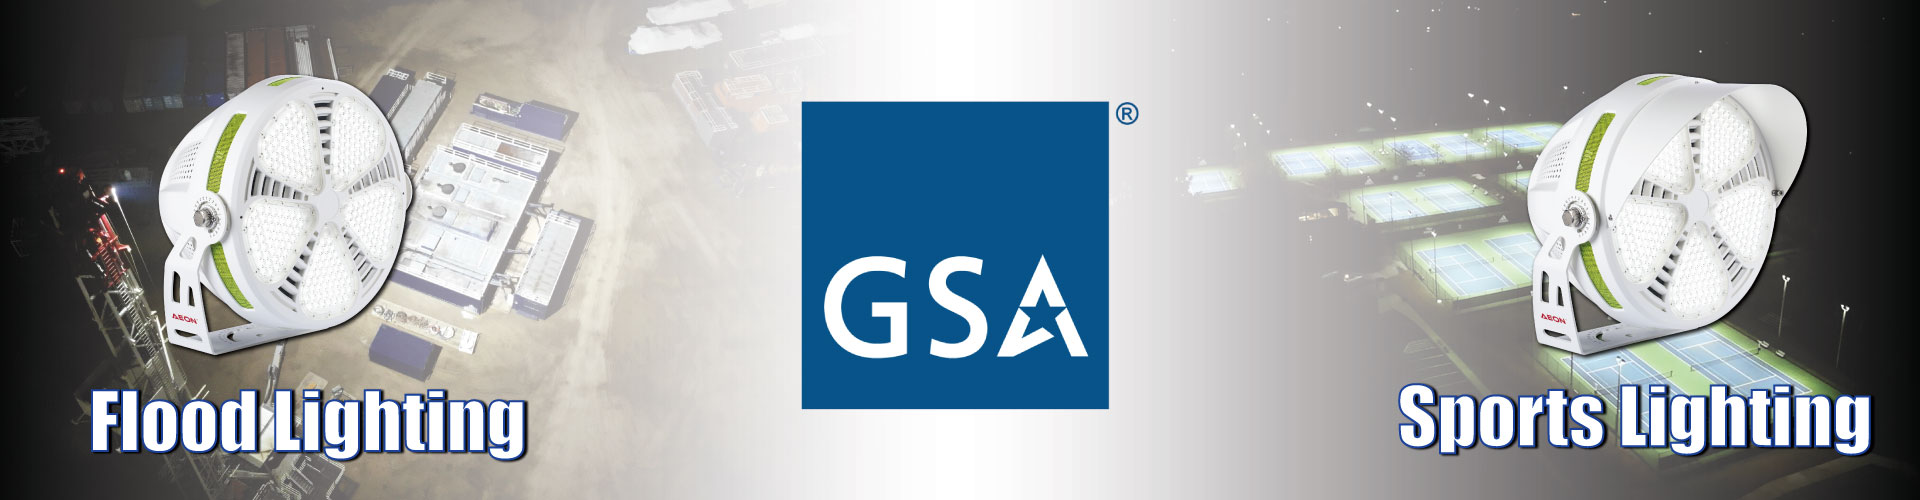 GSA-Header-update